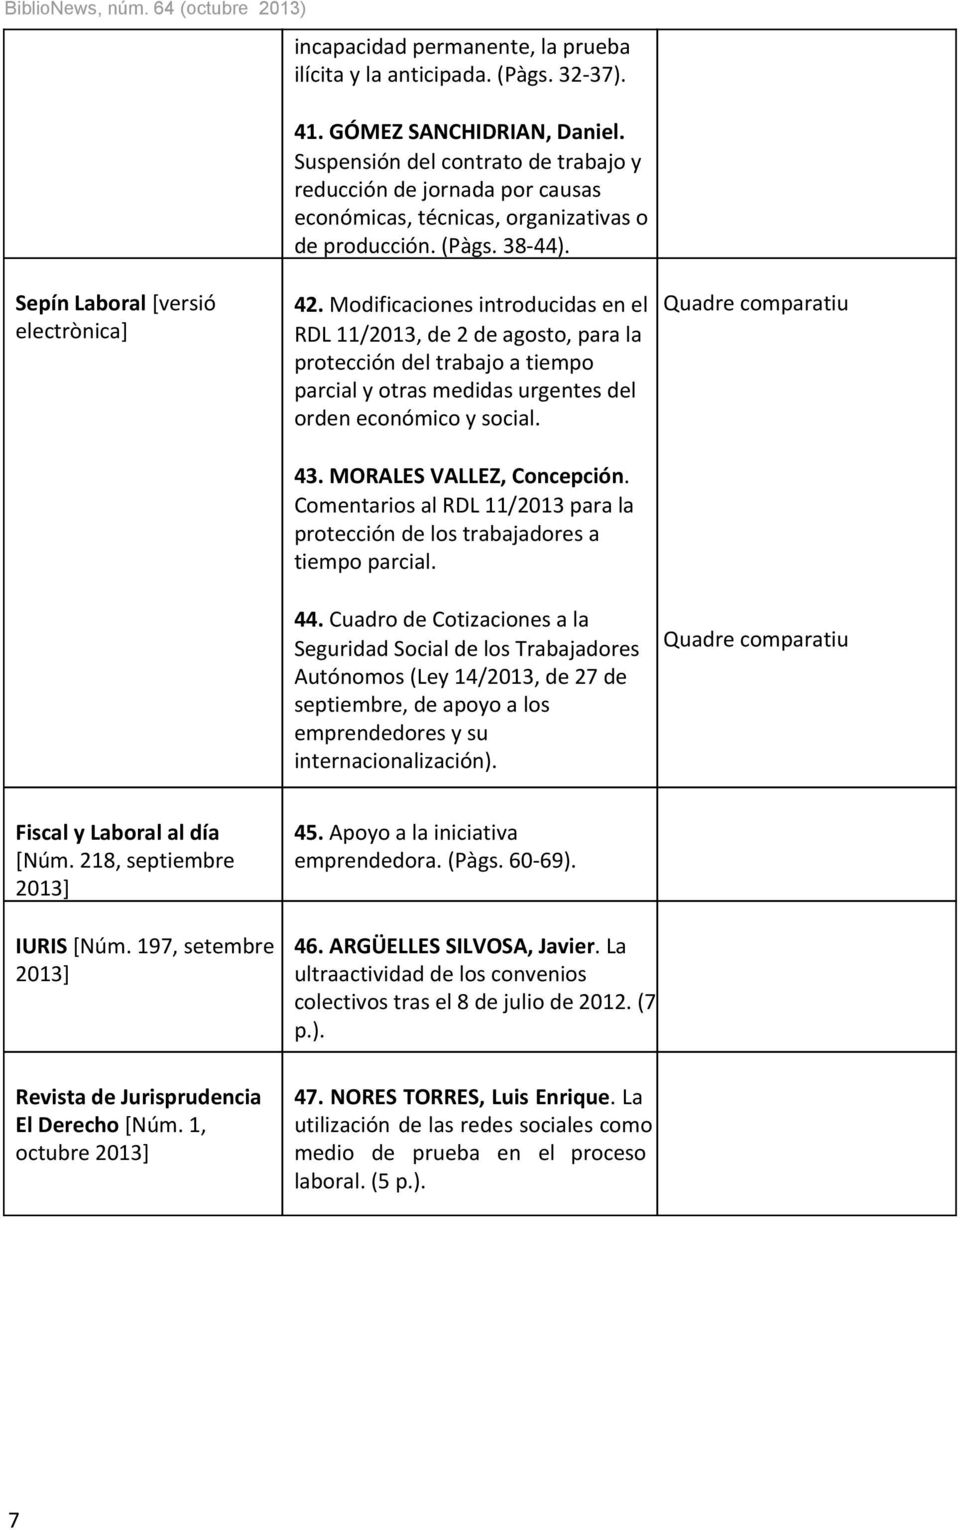 Modificaciones introducidas en el RDL 11/2013, de 2 de agosto, para la protección del trabajo a tiempo parcial y otras medidas urgentes del orden económico y social. 43. MORALES VALLEZ, Concepción.